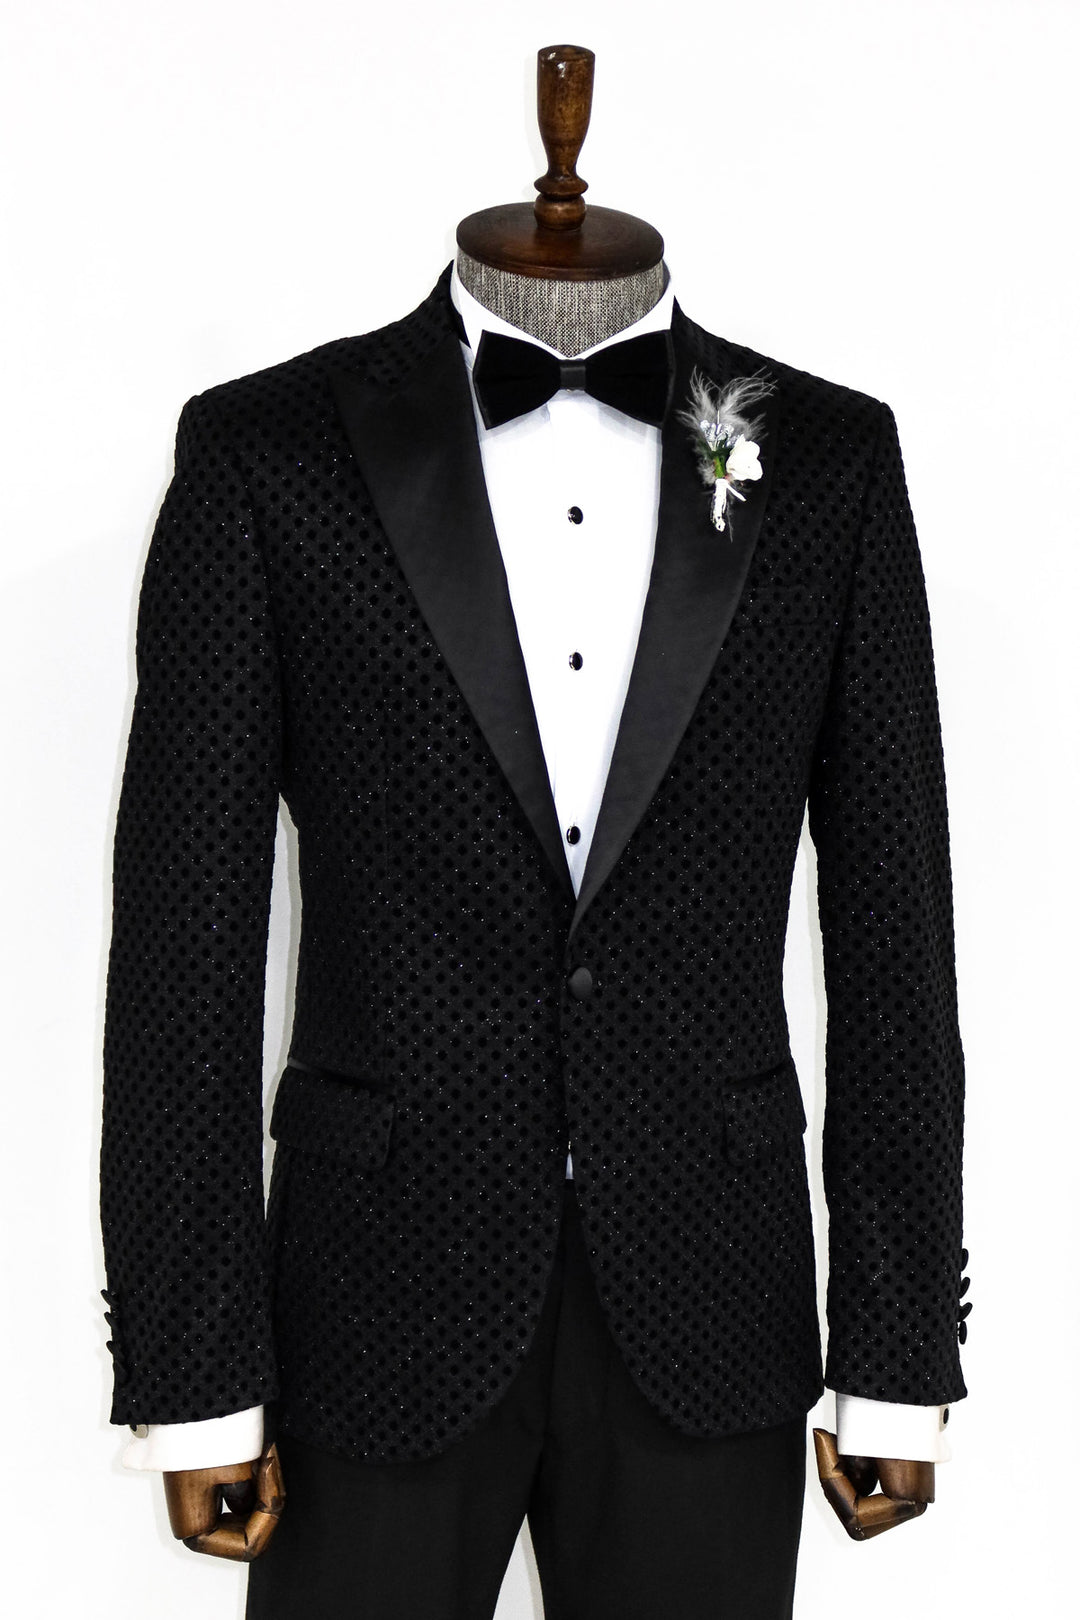 Sequin Dot Patterned Black Men Prom Blazer - Wessi